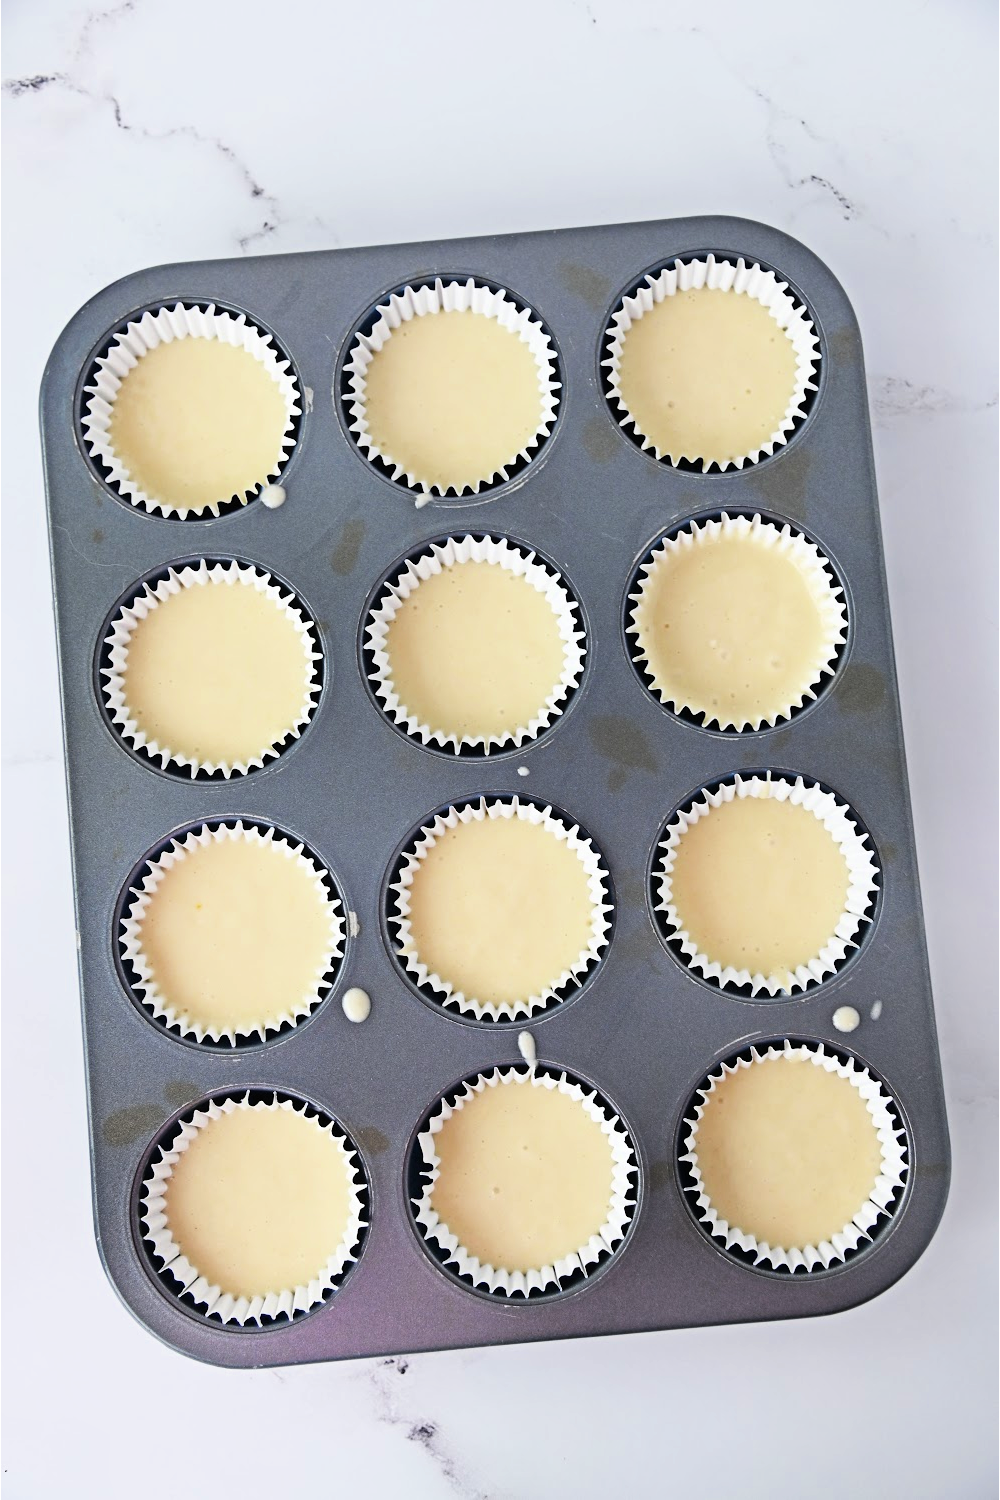 white cupcake batter in muffin pan.